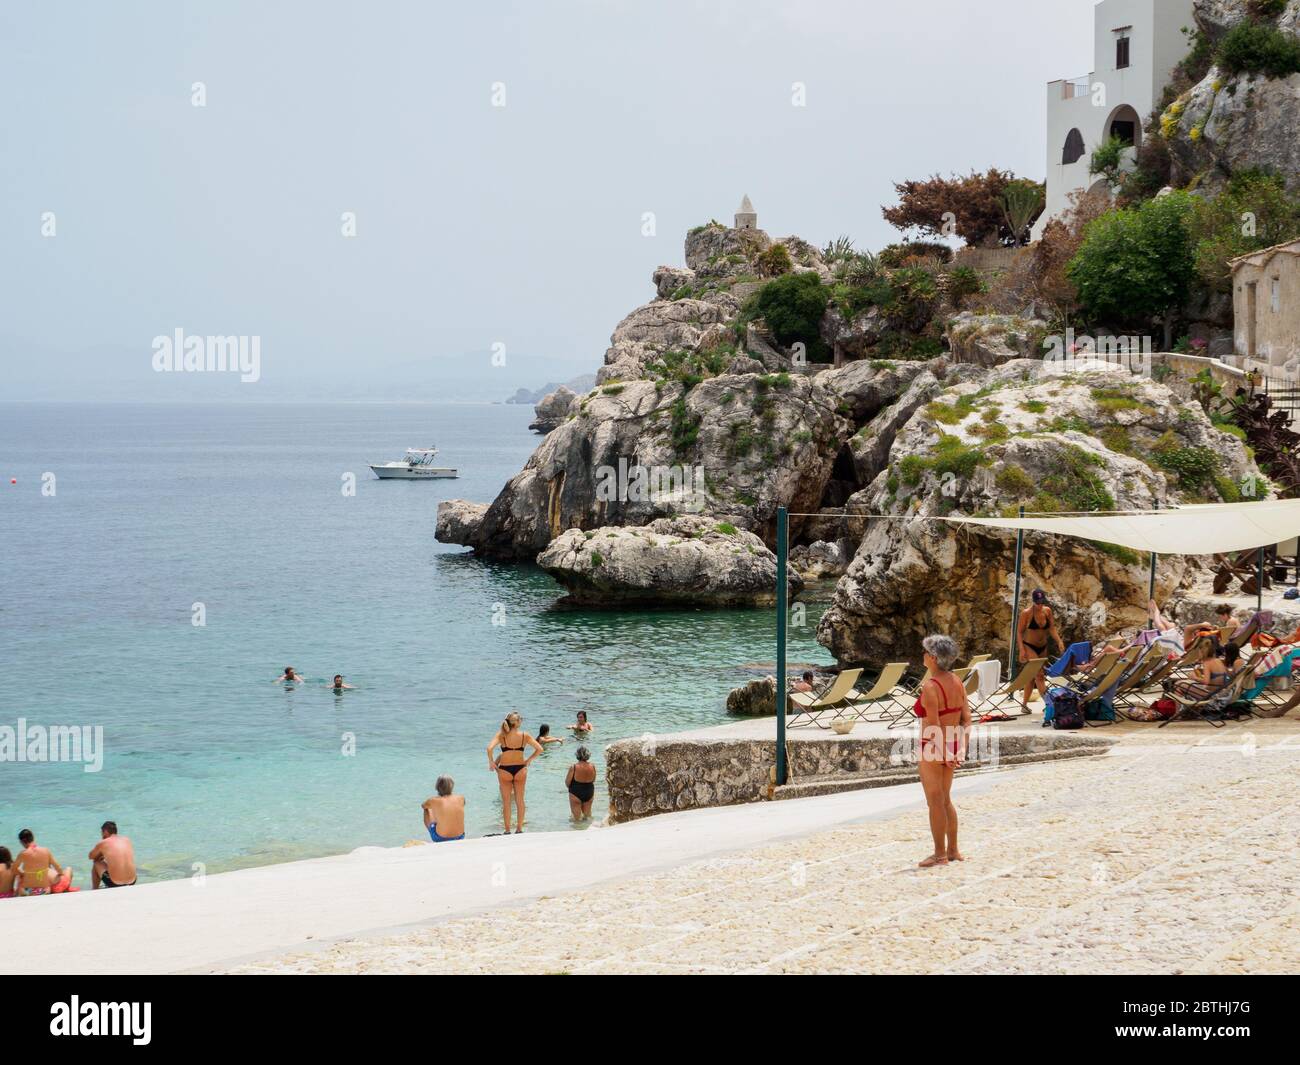 Sicilia, 2019 giugno, spiaggia privata rocciosa in sicilia con turisti e locali che fanno bagni e rilassarsi Foto Stock